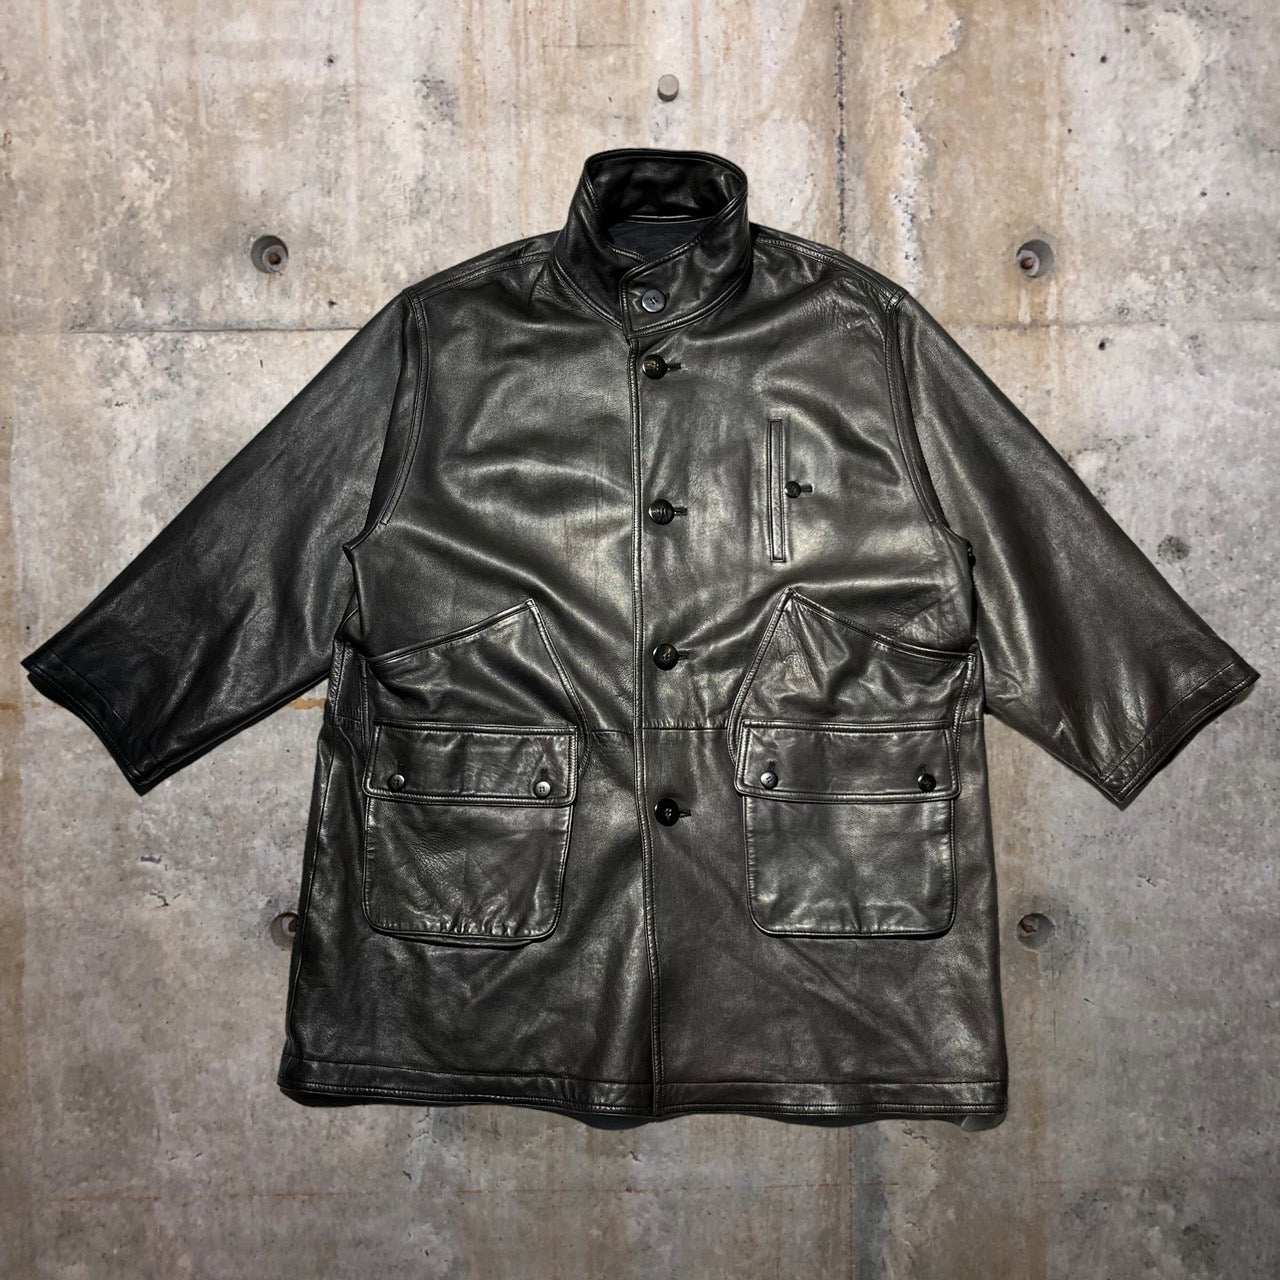 i.s. ISSEY MIYAKE(アイエスイッセイミヤケ) 88's ”is”logo reversible leather coat/リバーシブルレザーコート RQ63038 9(XLサイズ程度) ブラック IS TSUMORI CHISATO DESIGN